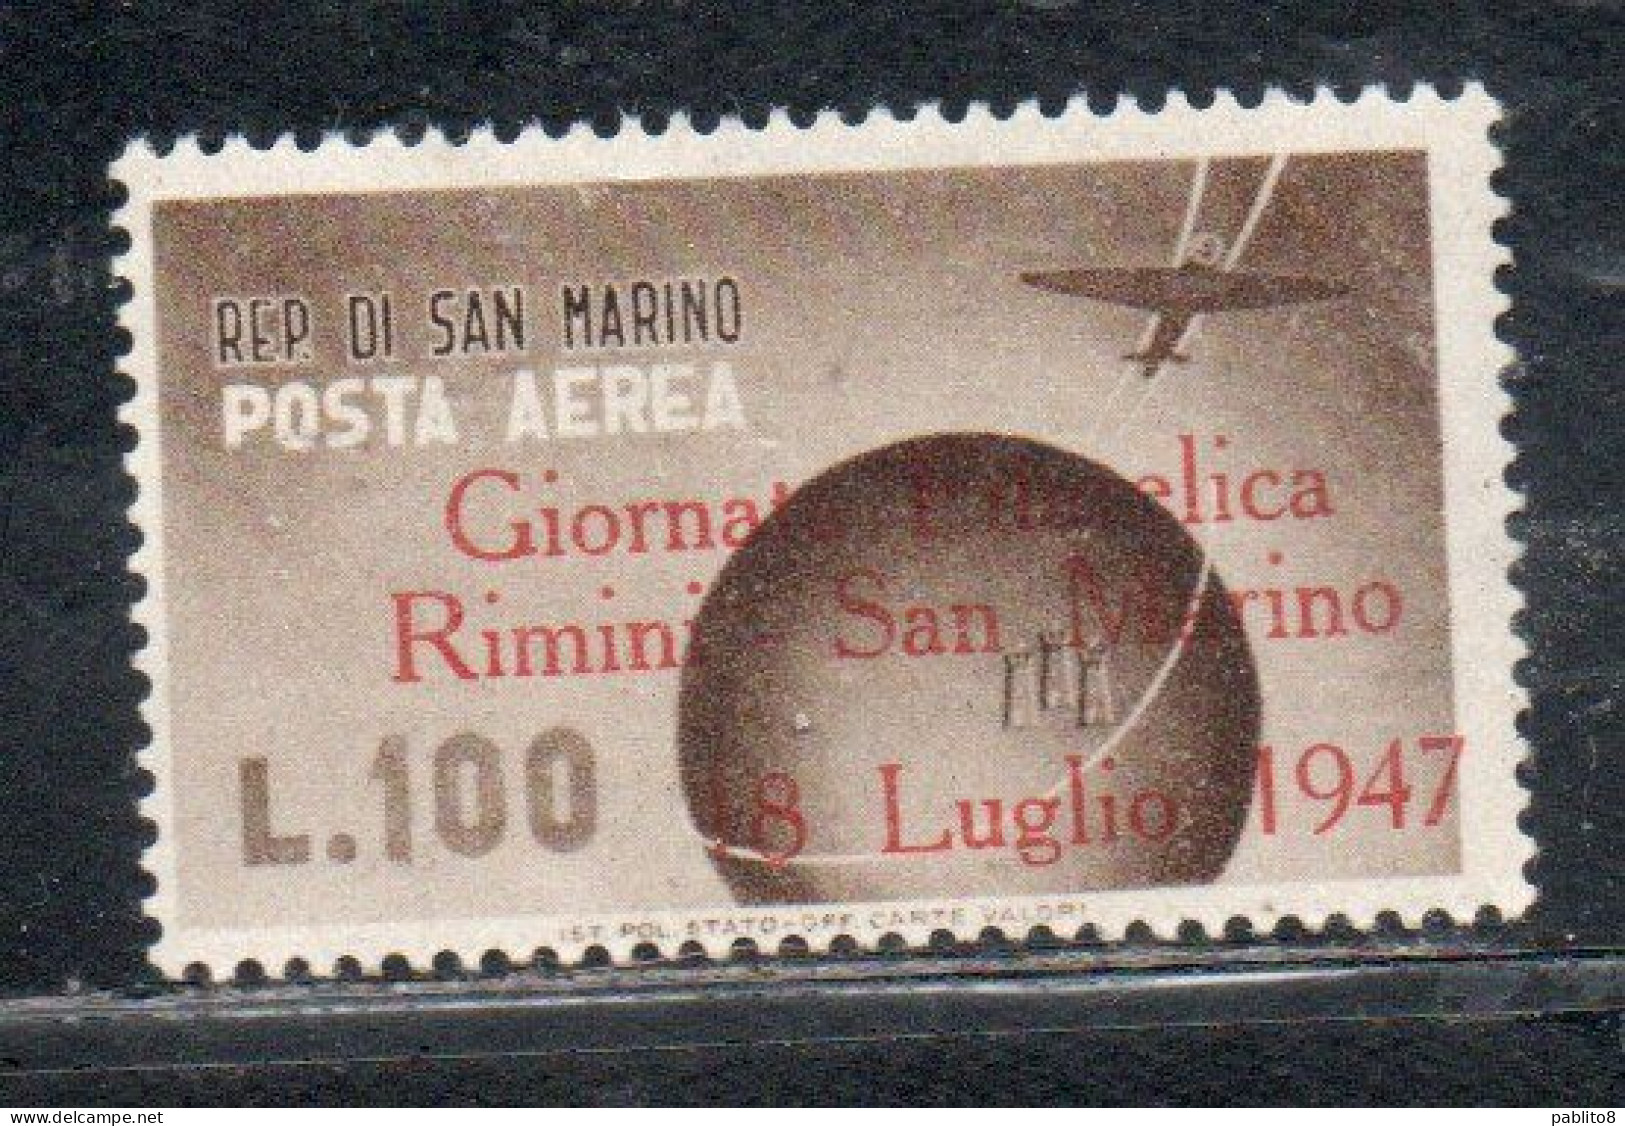 REPUBBLICA DI SAN MARINO 1947 POSTA AEREA AIR MAIL GIORNATA FILATELICA RIMINI LIRE 100 MNH - Luchtpost